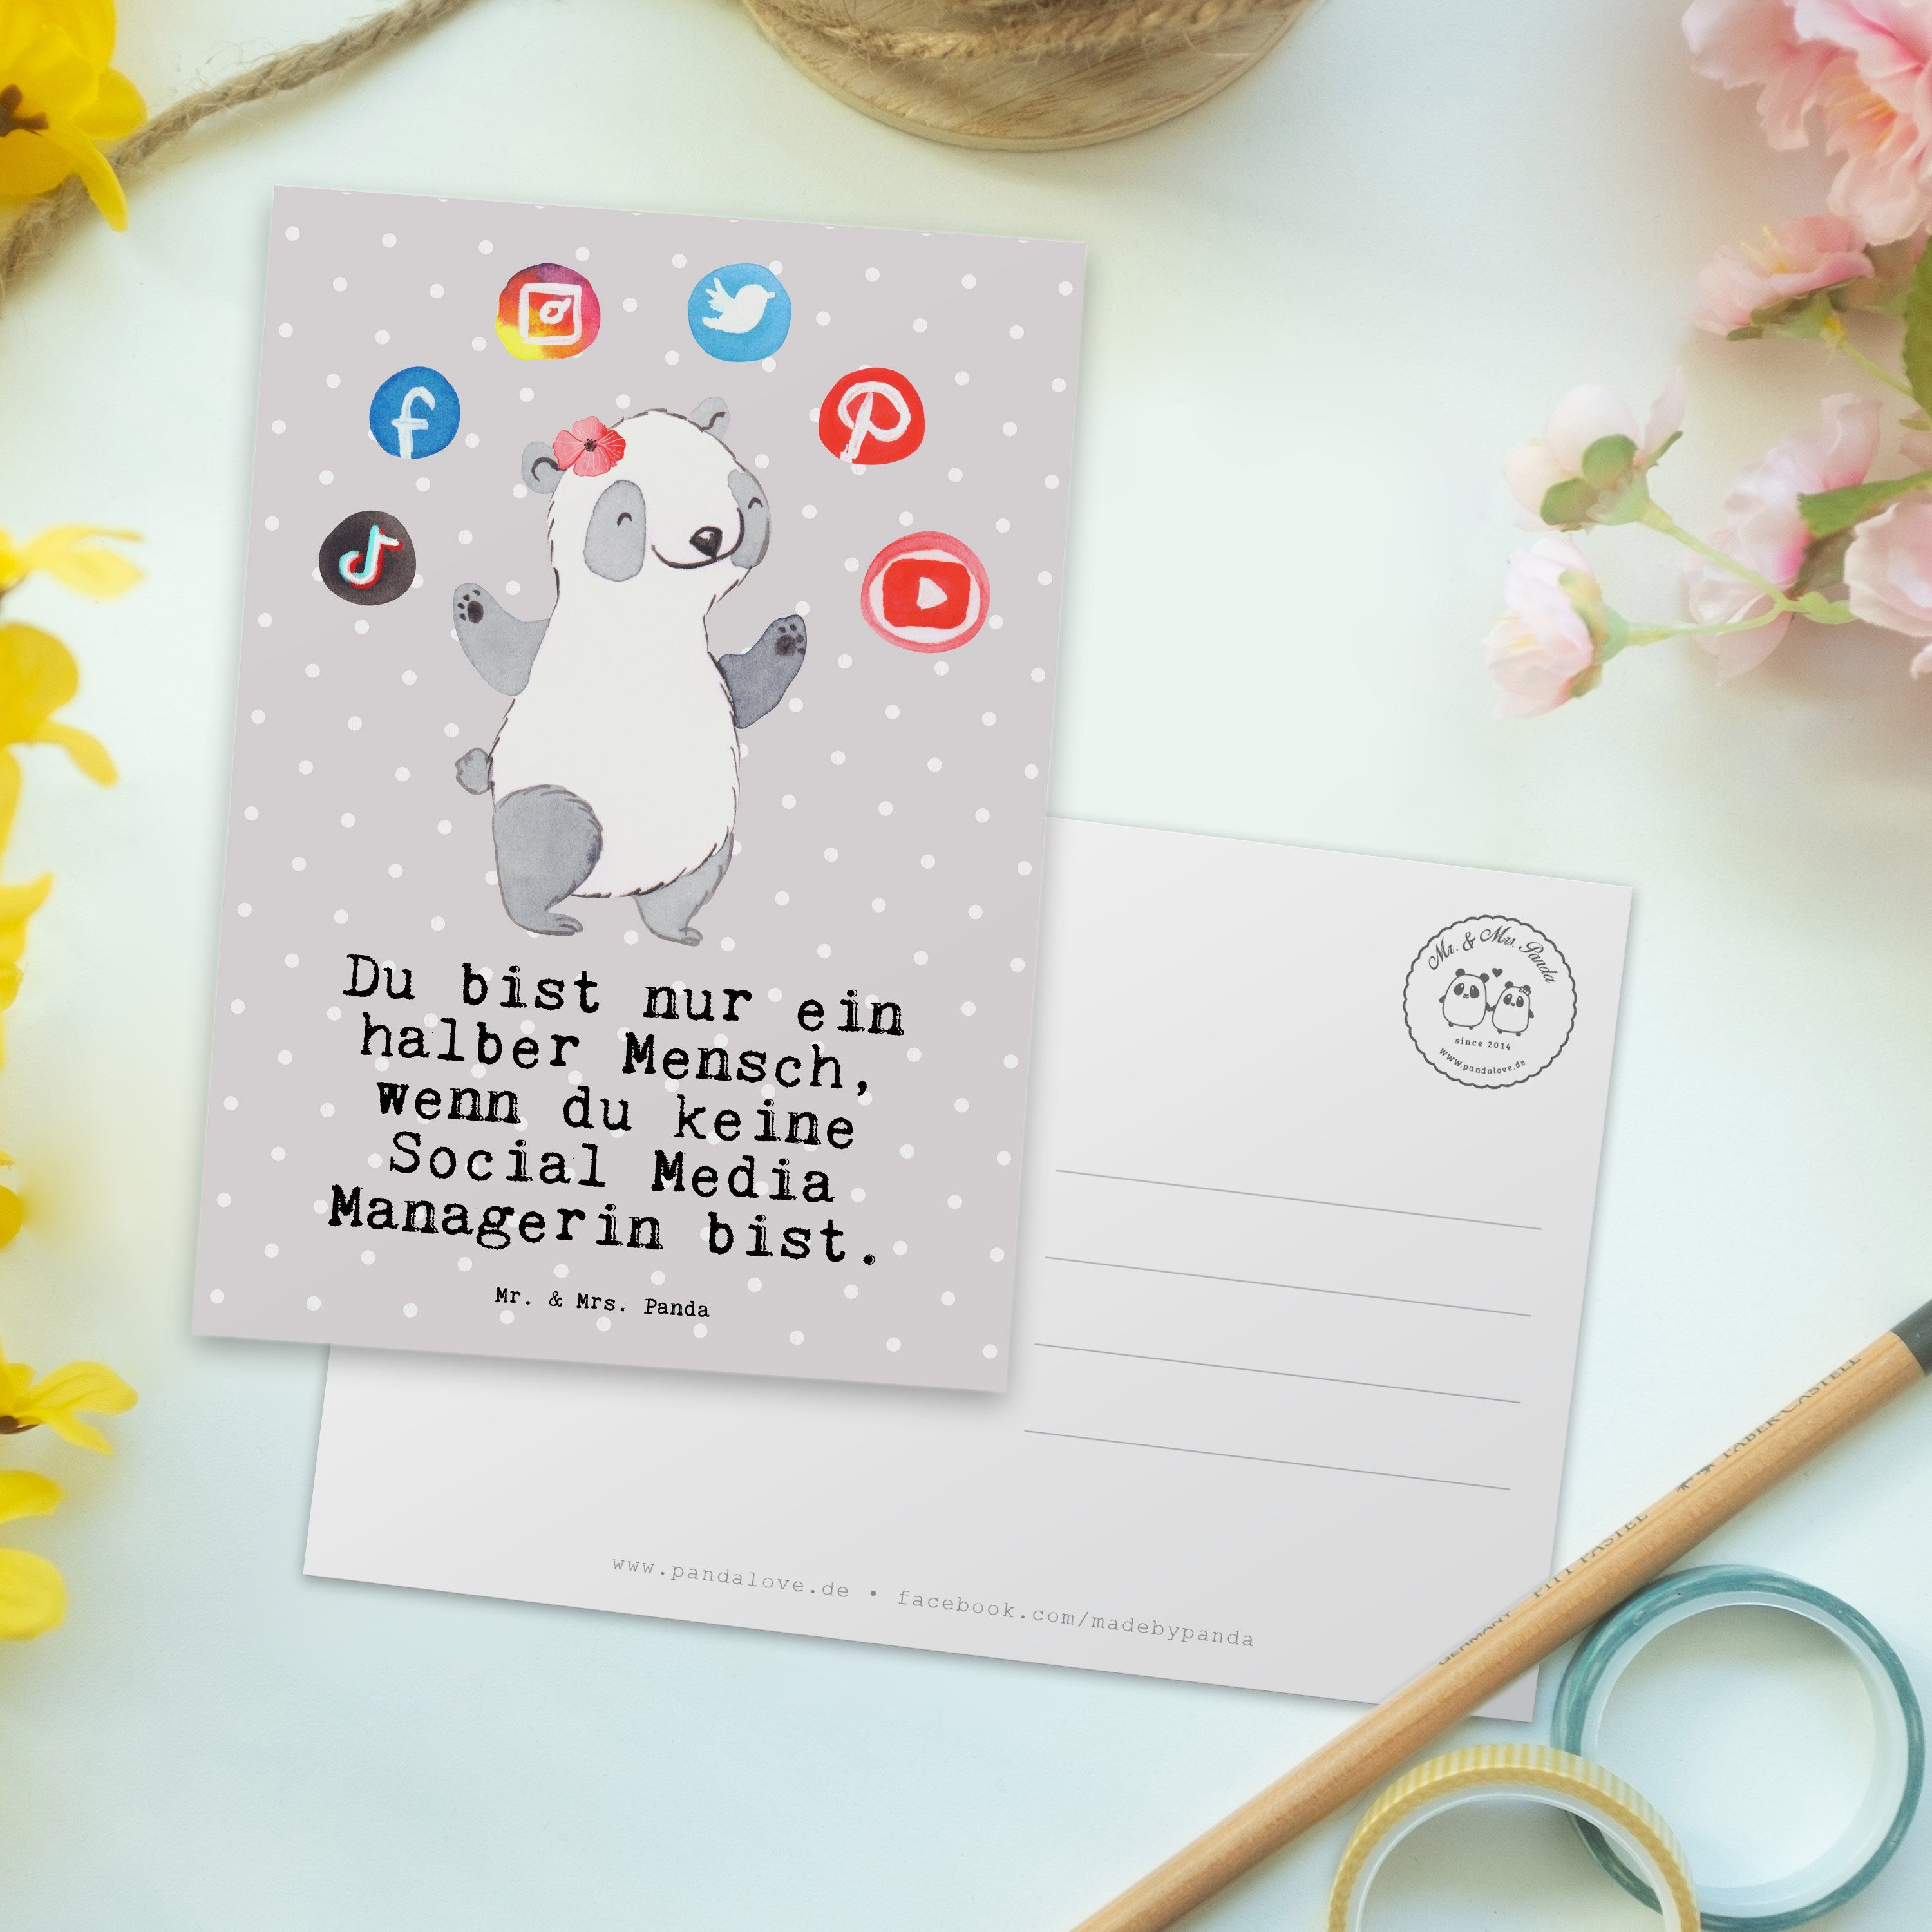 Mr. & Geschenk, - Panda Grau Mrs. Geburtstag Media mit Postkarte Managerin Herz Social Pastell 